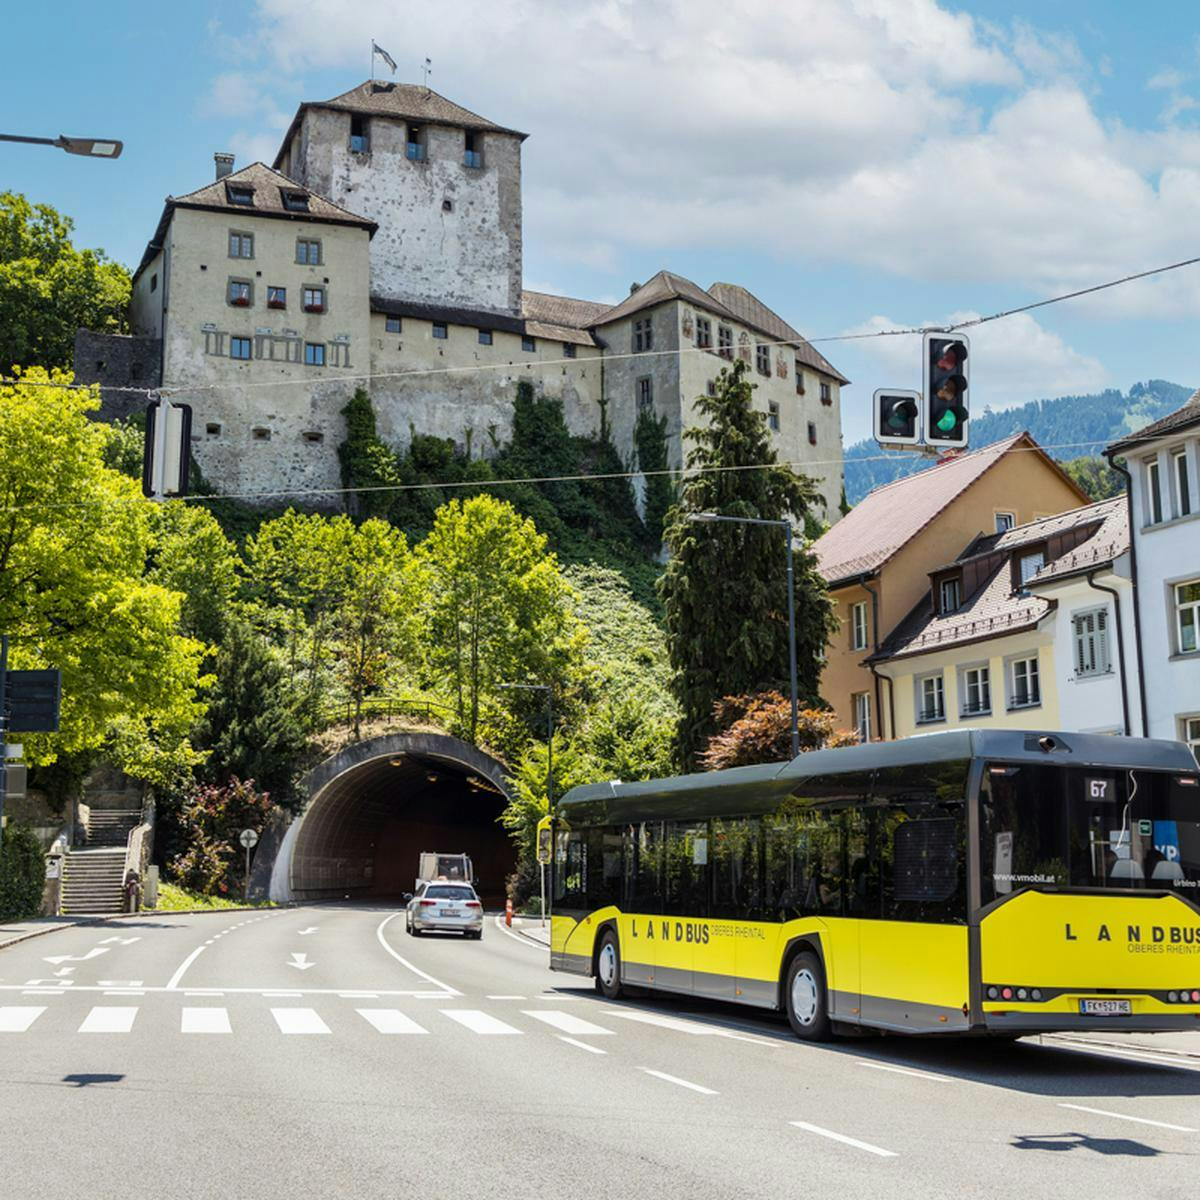 Landbus Oberes Rheintal auf dem Weg durch den Schattenburgtunnel in Feldkirch © Patricia Keckeis